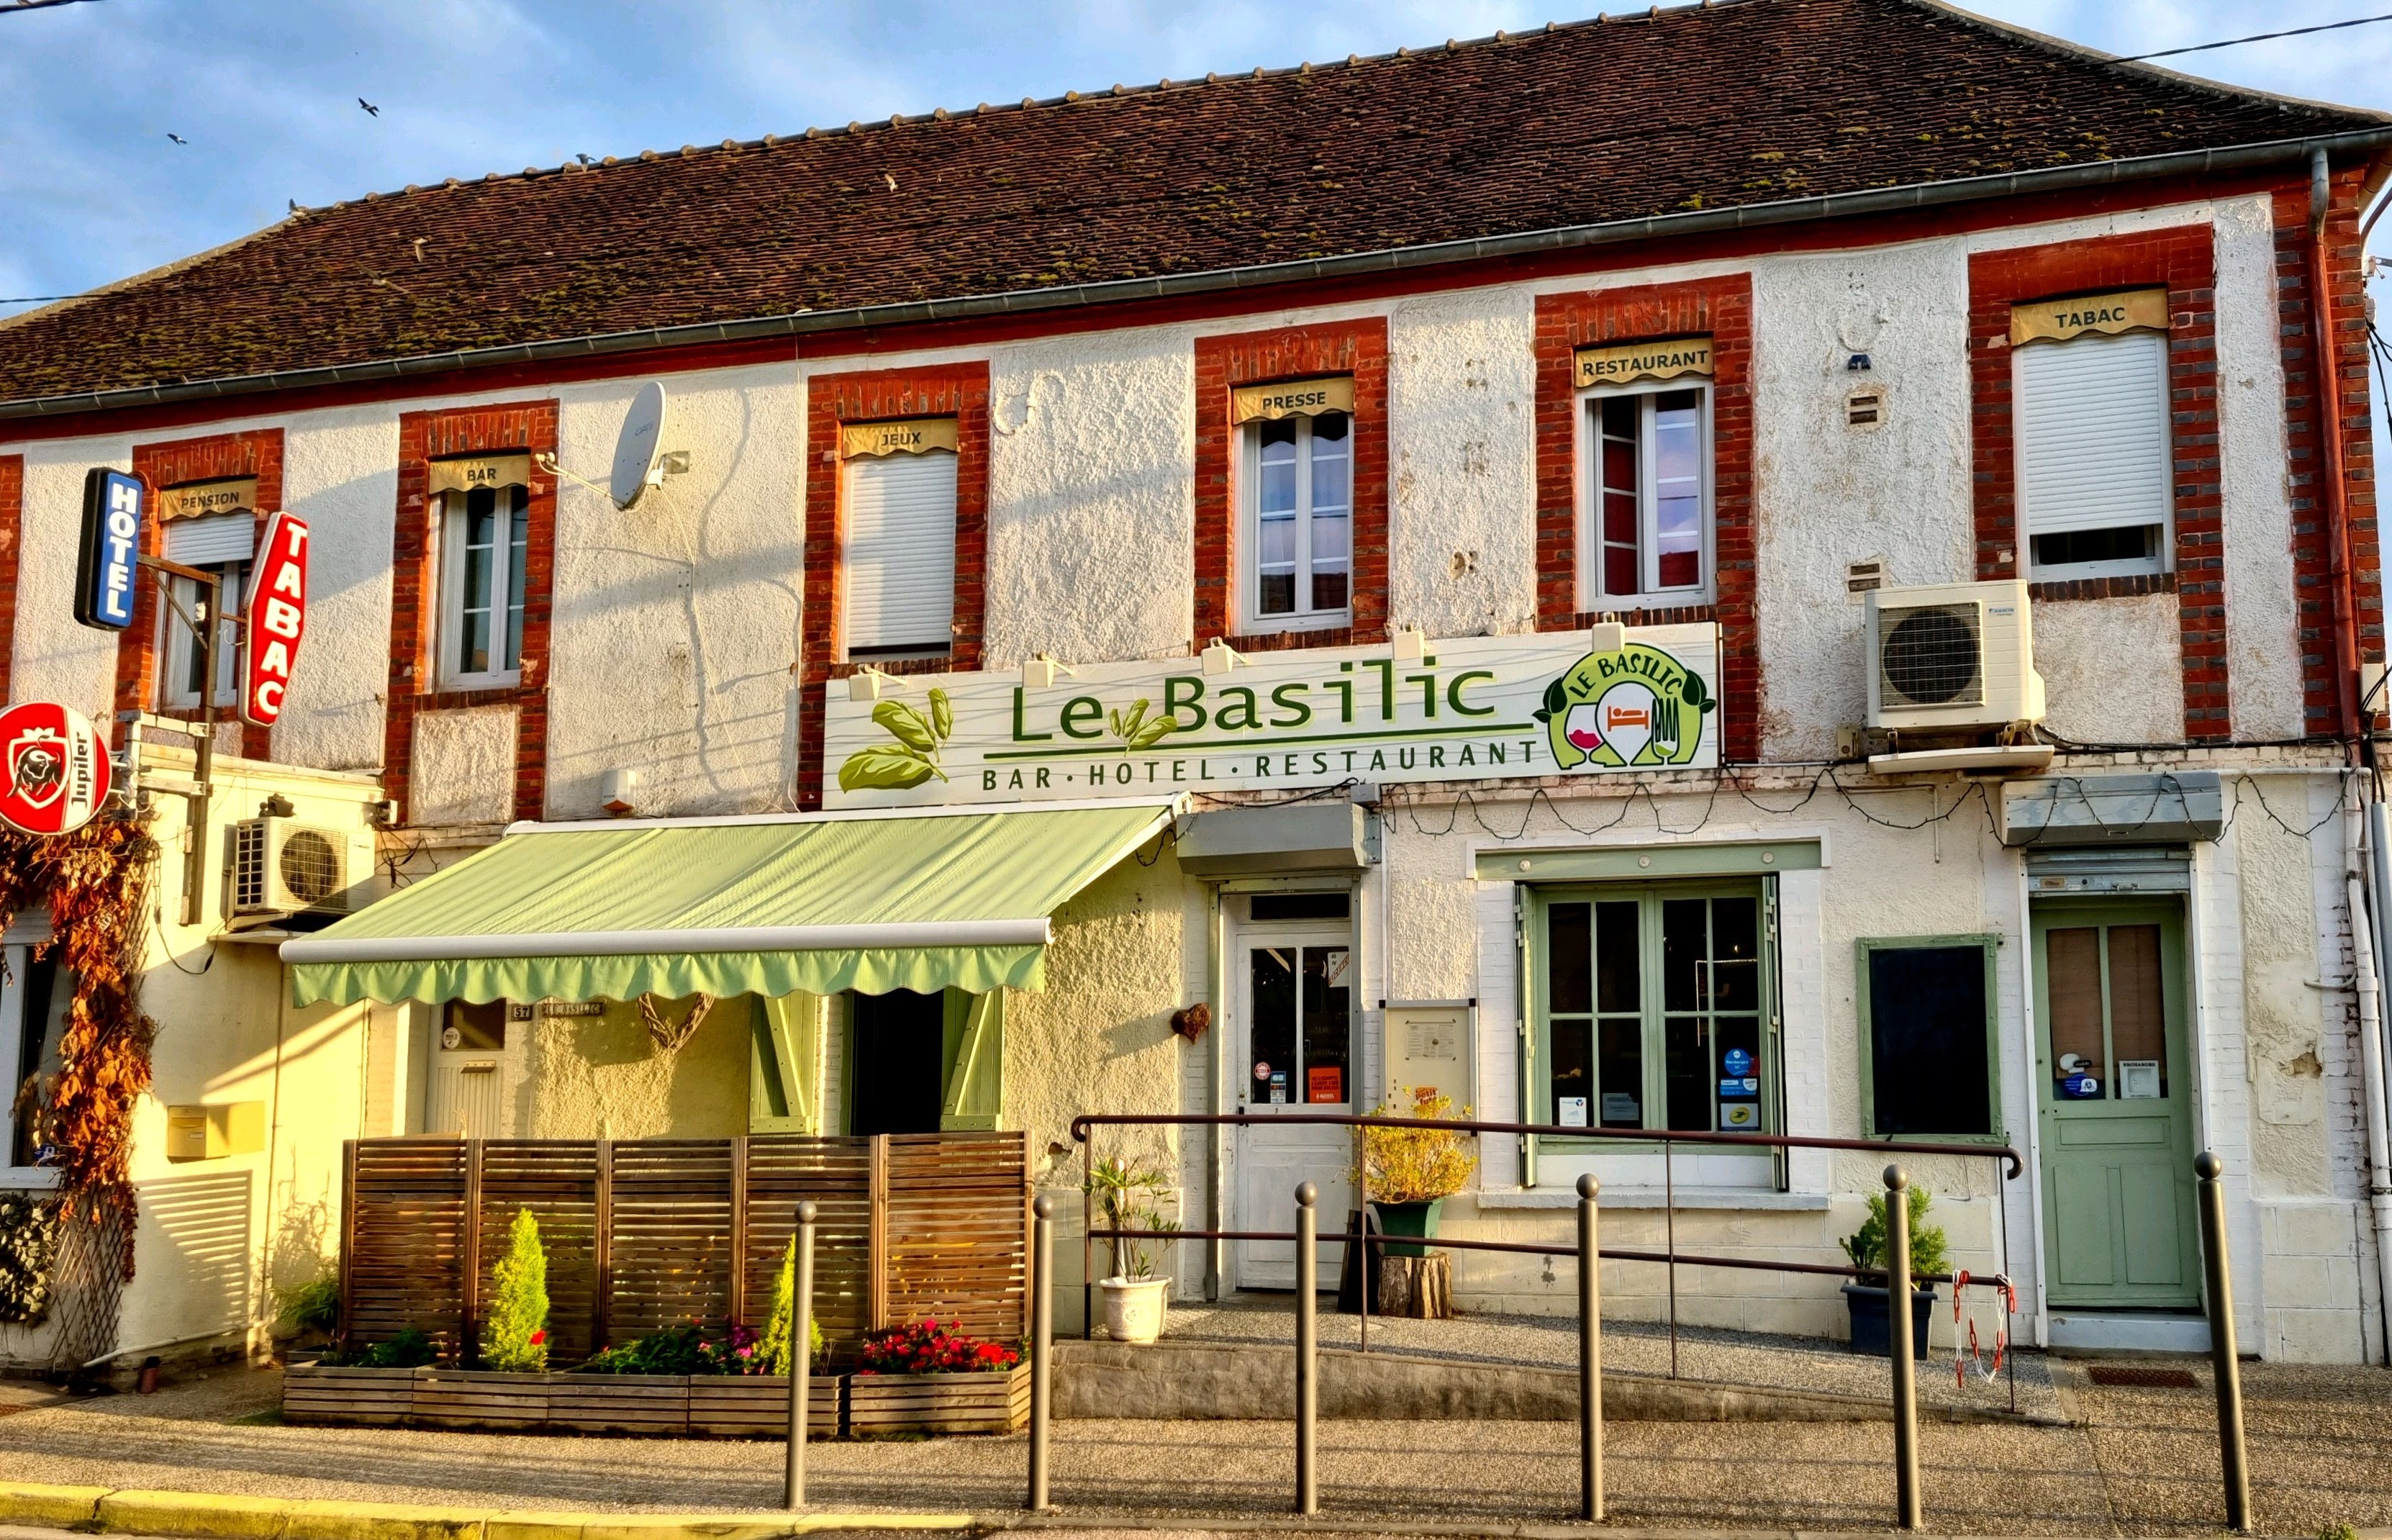 Restaurant Bar Tabac et chambres d'Hôtes, dans un village situé  à 3 km de SENS, avec son église St Laurent et St Vincent du XII ème siècle, sa Fromagerie LINCET, réputée par son "Chaource", son boucher "Denaux"et de part son restaurant LE BASILIC.
Cette enseigne a fait parlée d'elle depuis le confinement avec les plats à emporter , en remportant par 2 années consécutives le titre de "meilleur burger de l'Yonne" en 2021 et 2022, et s'affiche toujours dans un respect de travailler en local avec les producteurs et artisans, dans une préservation de l'économie locale et responsable...
Tenu depuis 2007, une autre expérience a besoin d'être ouverte pour les patrons.
Des services sont à reprendre tels que dépôt de pain, FDJ, et autres services et horaires à développer. (actuellement ouvert du L au V de 7h à 21H).